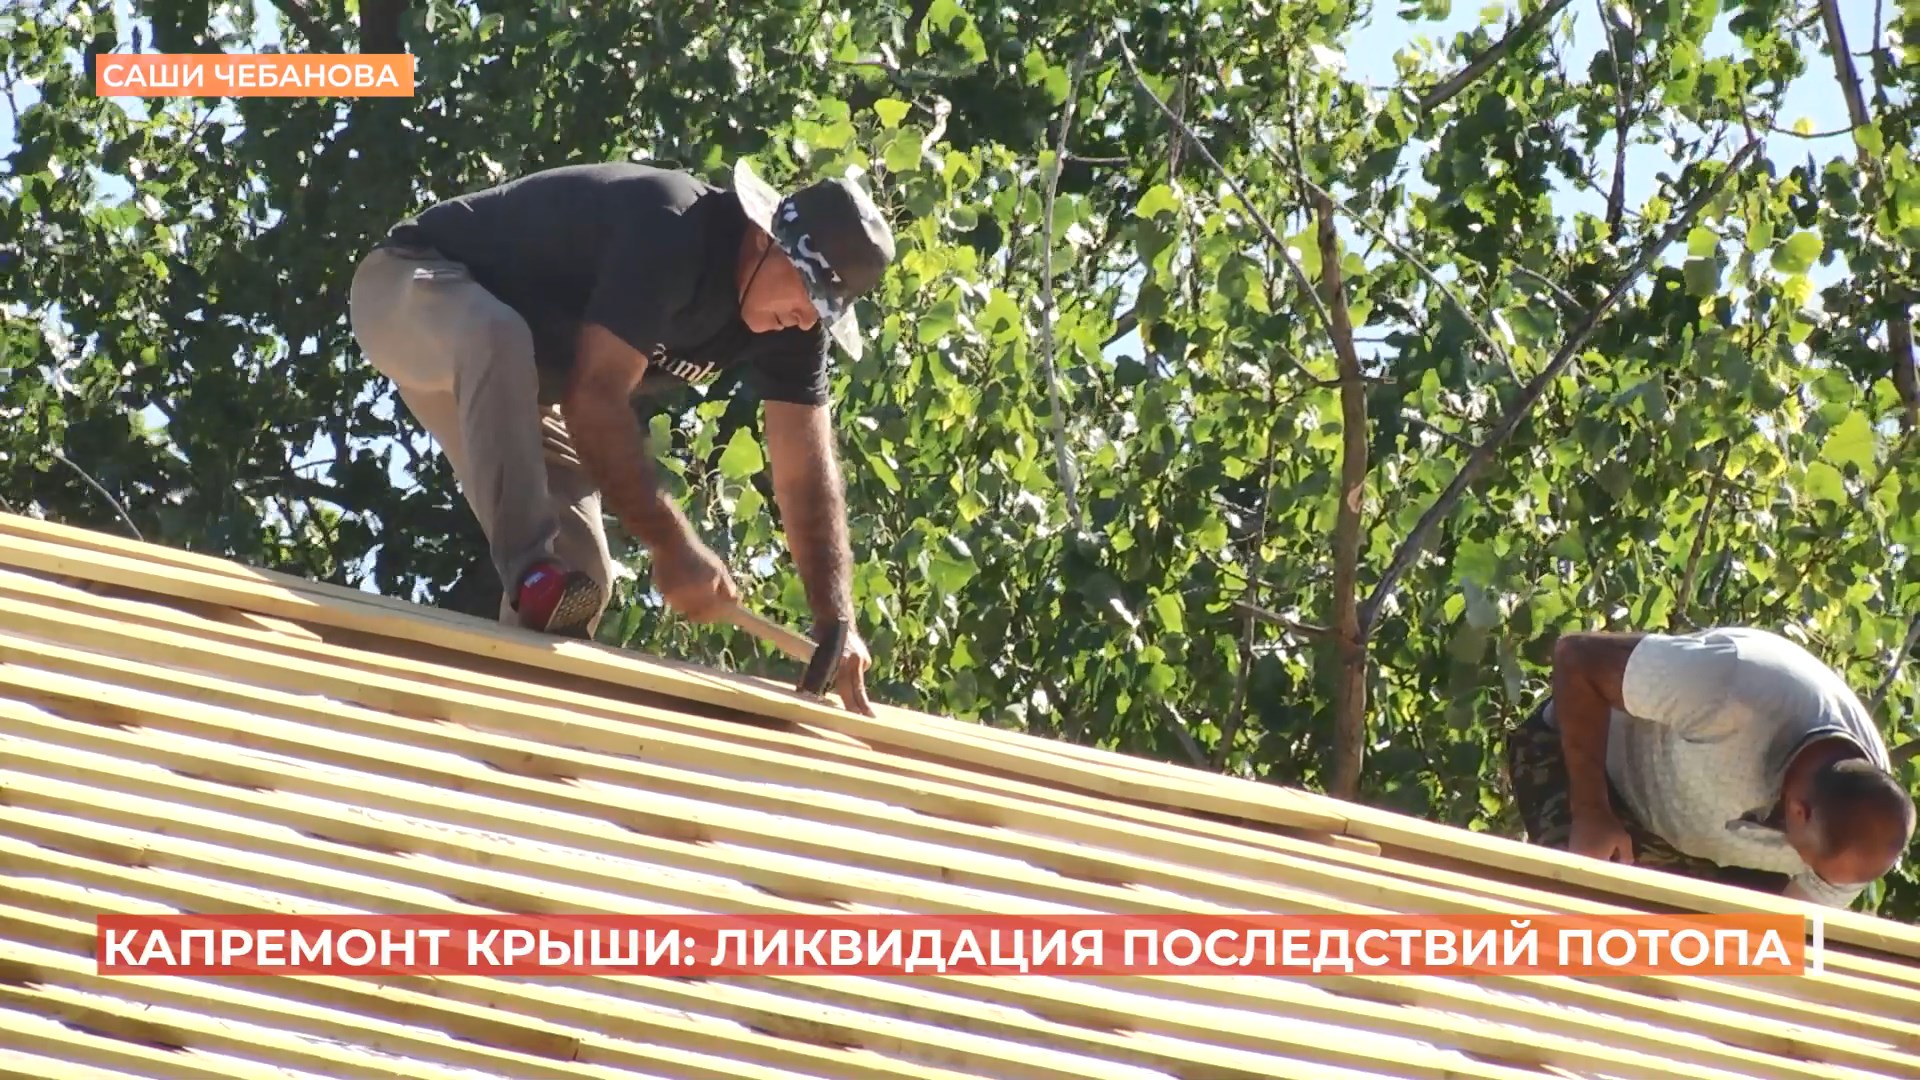 Подрядчик, который ремонтирует крышу дома №8 по улице Саши Чебанова, устраняет последствия ливня